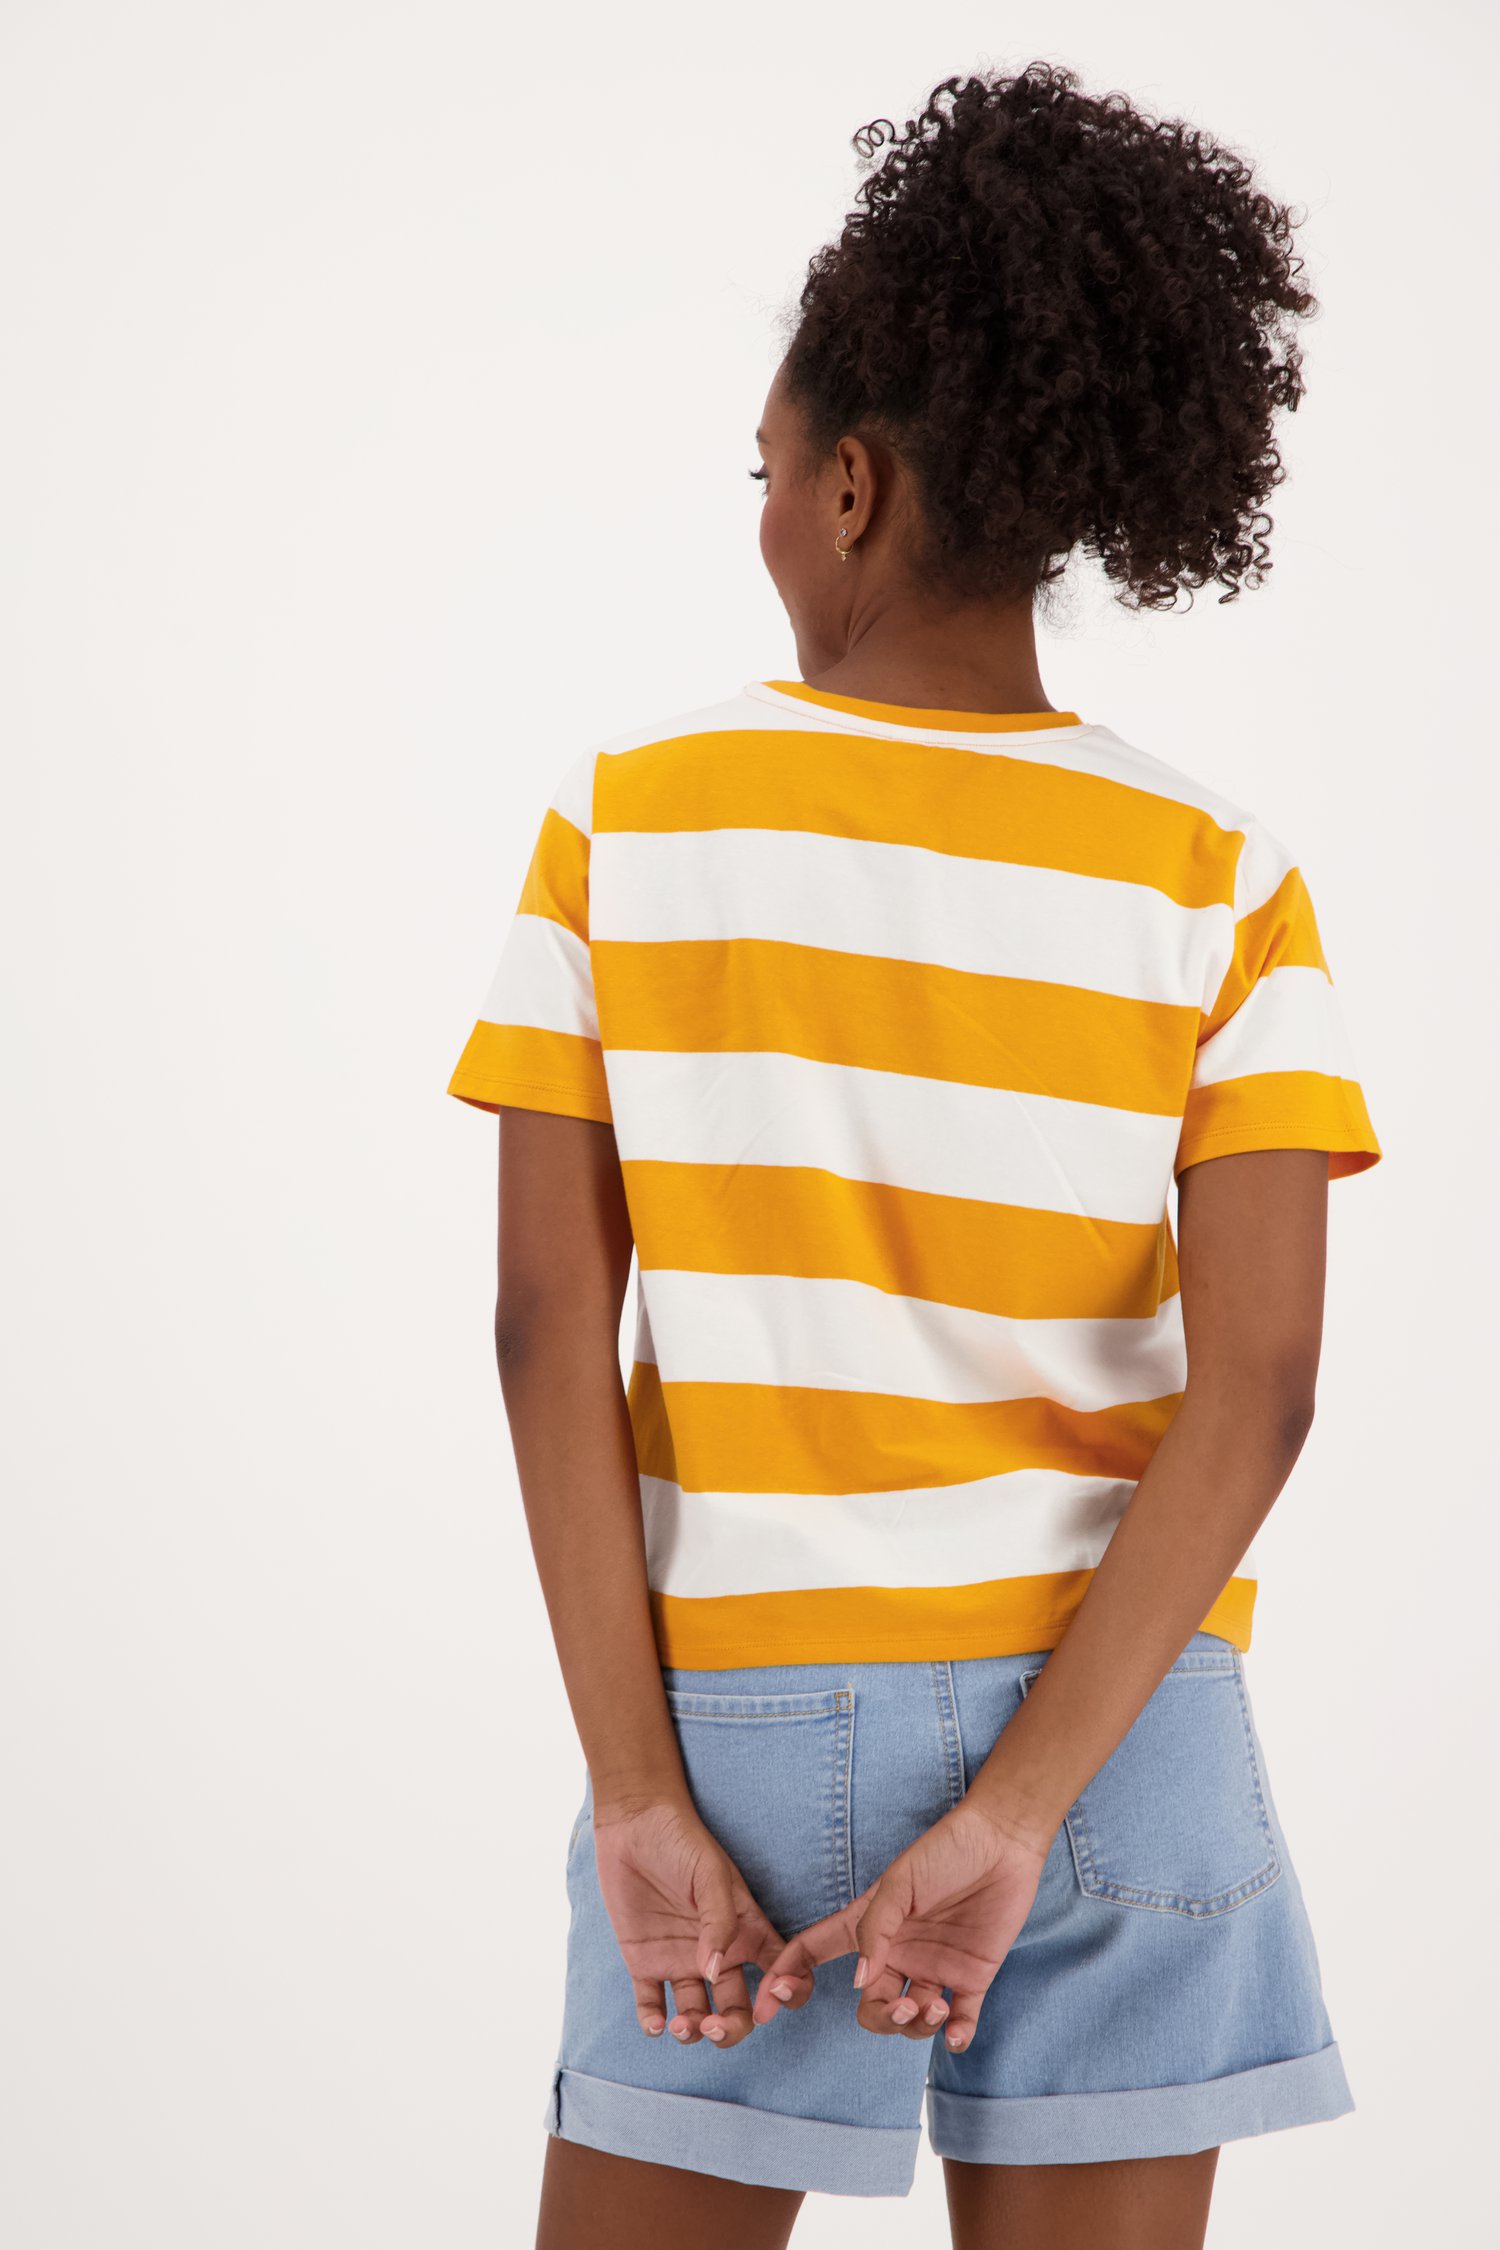 Oranje gestreept T-shirt van JDY voor Dames